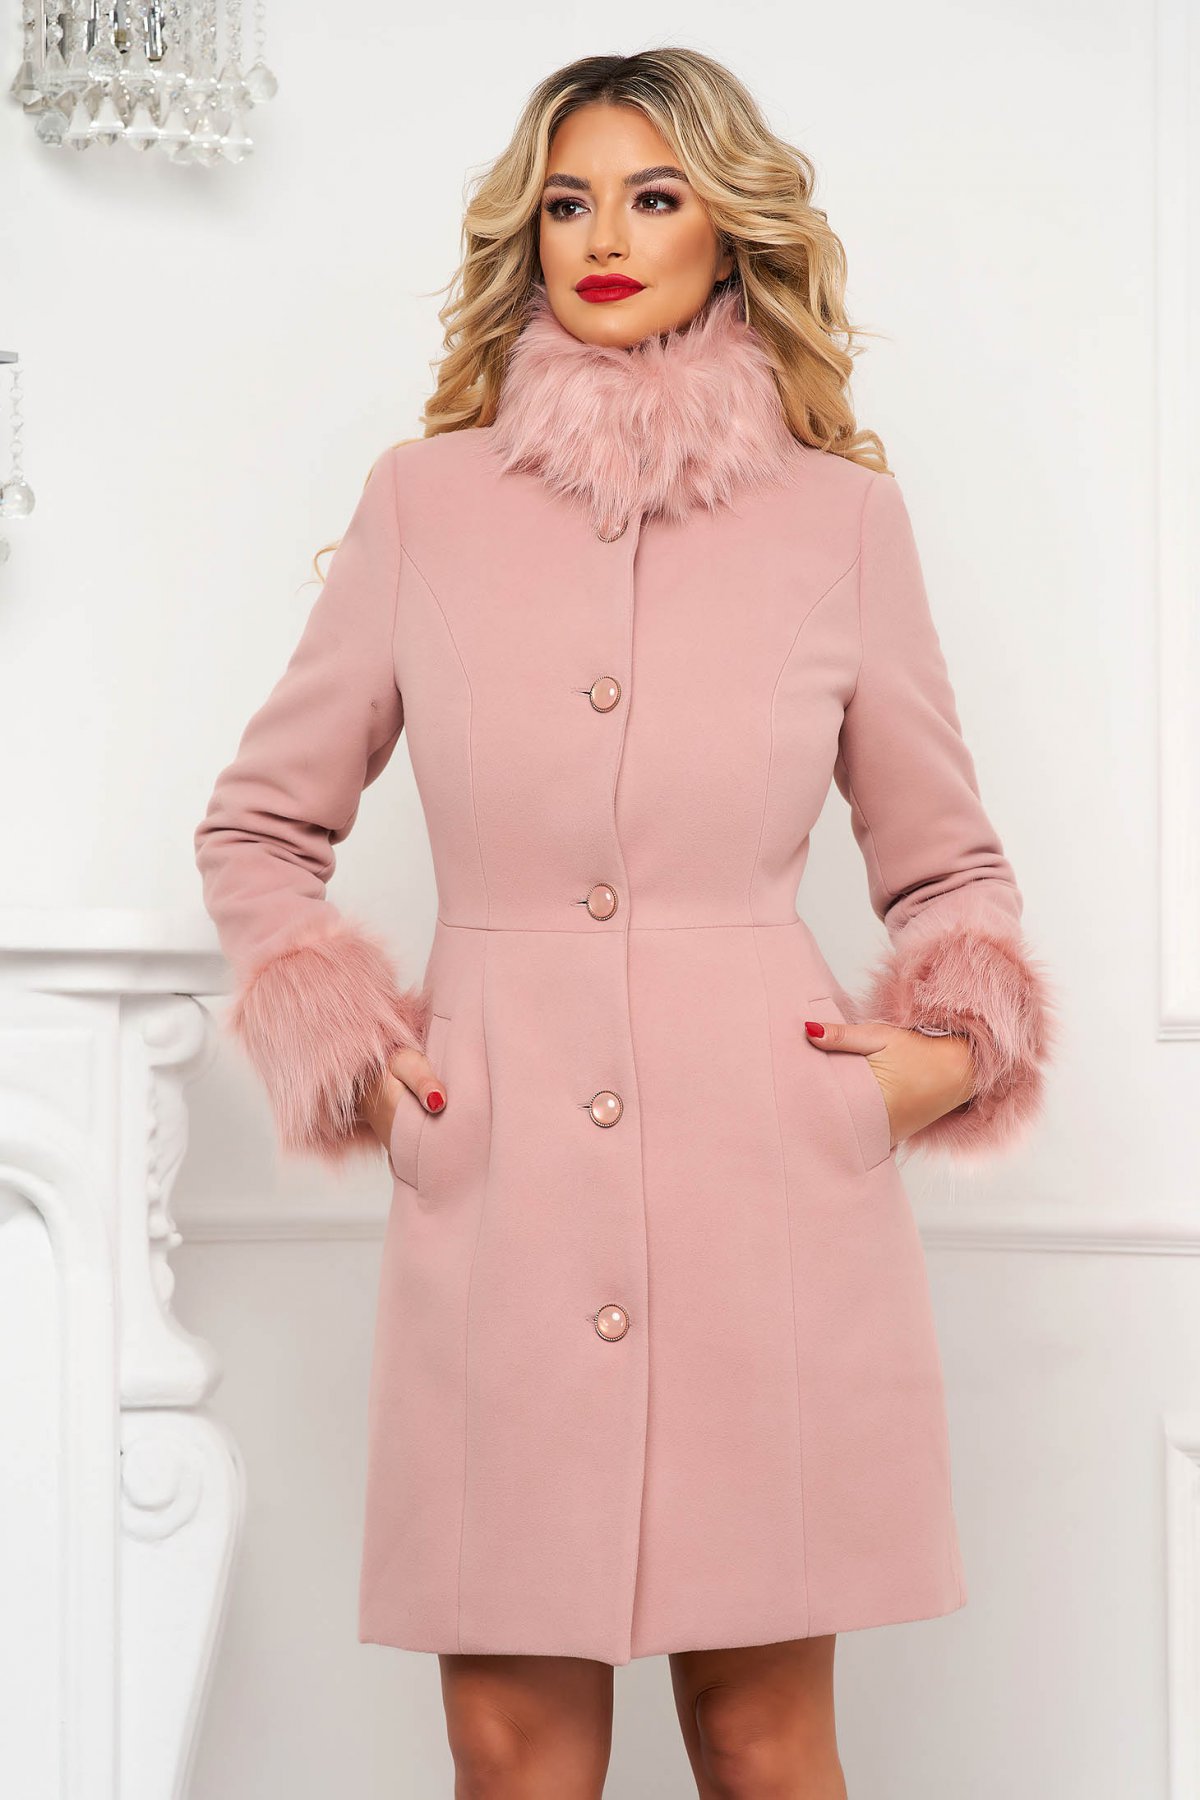 Palton Artista roz prafuit cambrat elegant cu guler si mansete cu blana Artista imagine 2022 13clothing.ro